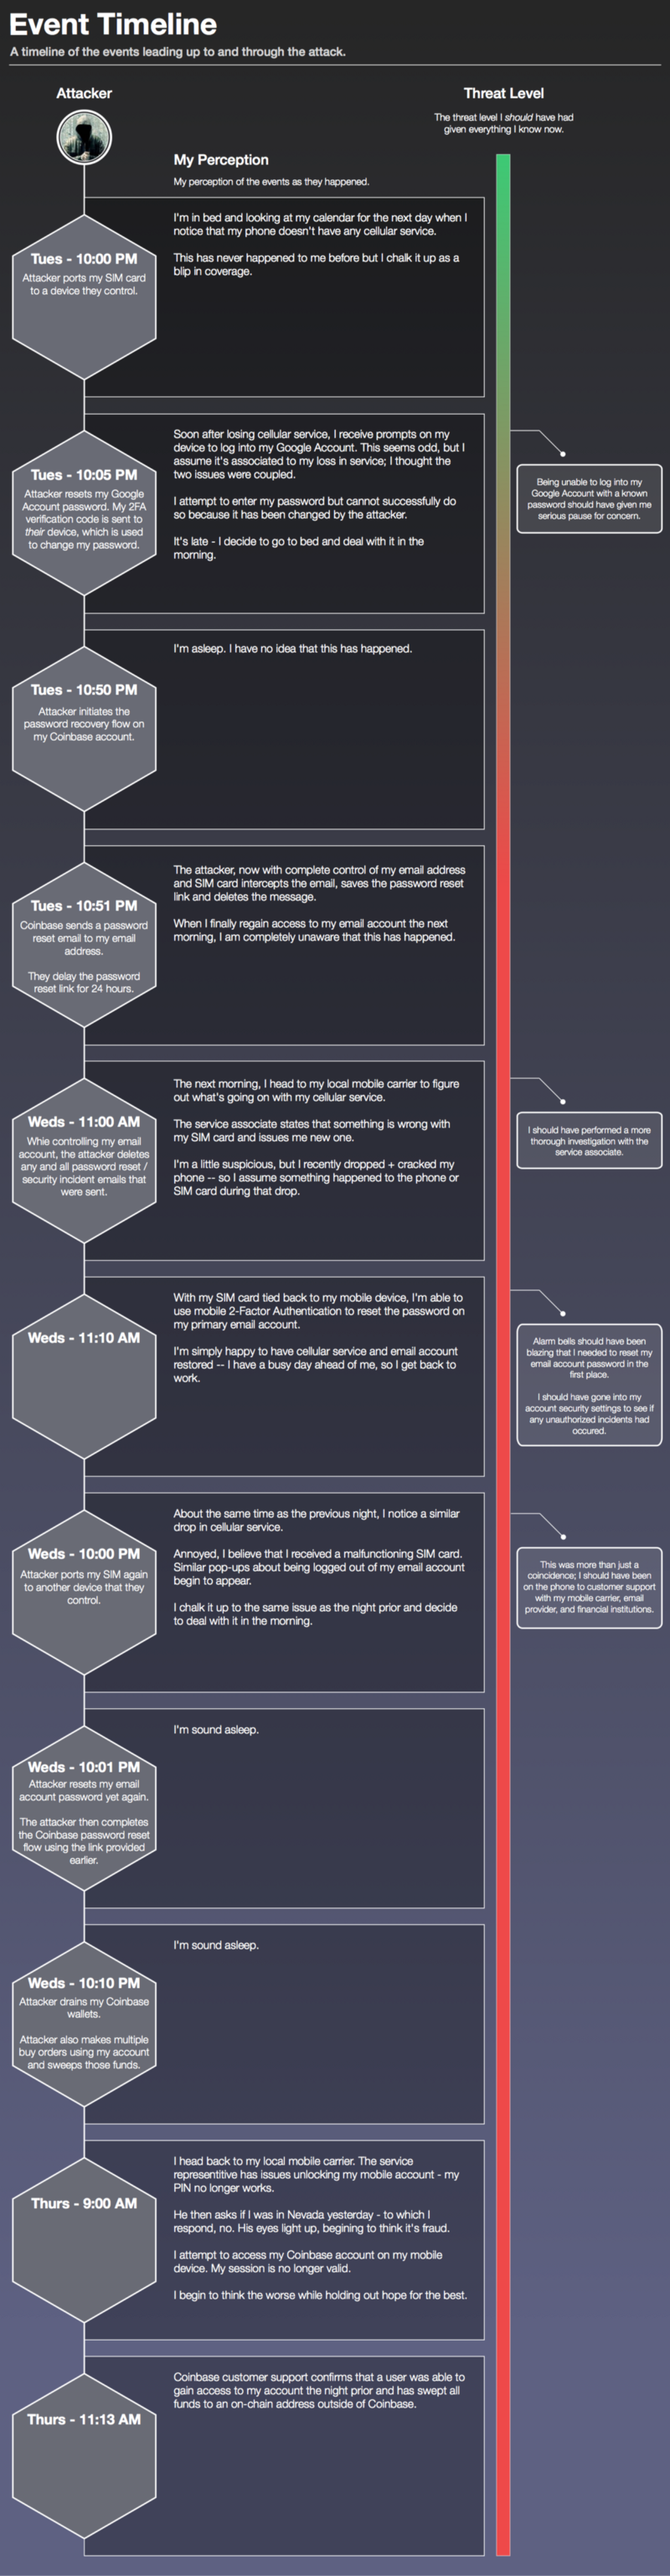 Sean's Timeline of SIM Swap Hack.png